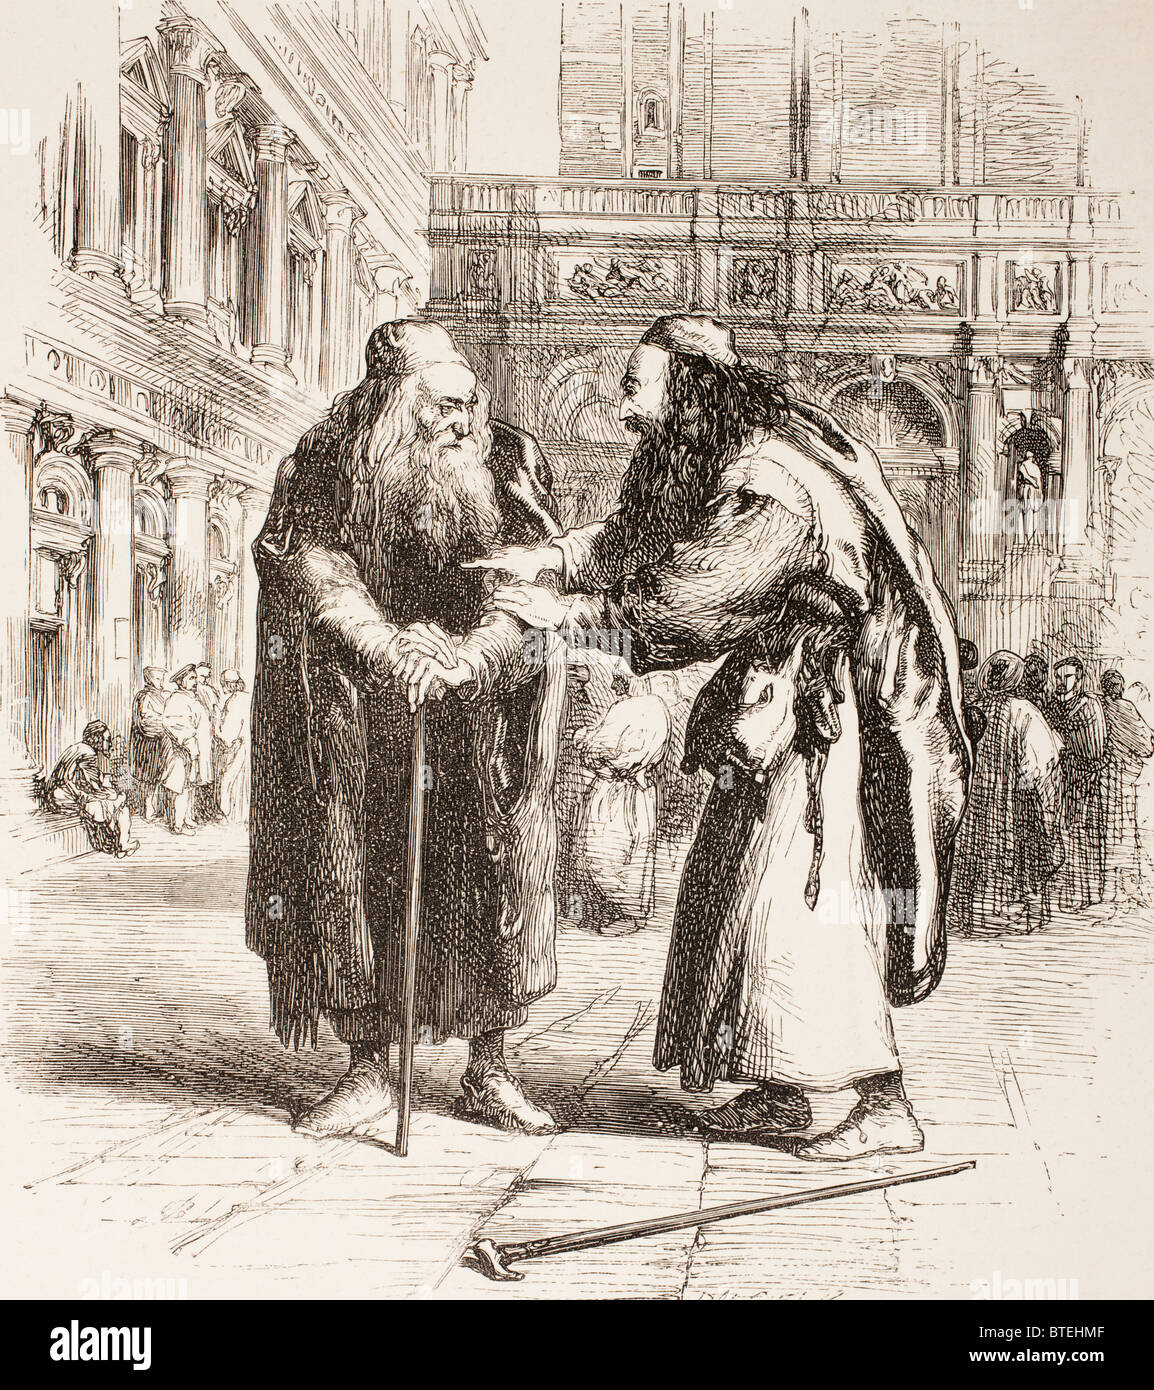 Illustration von Sr John Gilbert für den Kaufmann von Venedig von William Shakespeare. Shylock und Tubal treffen auf der Straße. Stockfoto